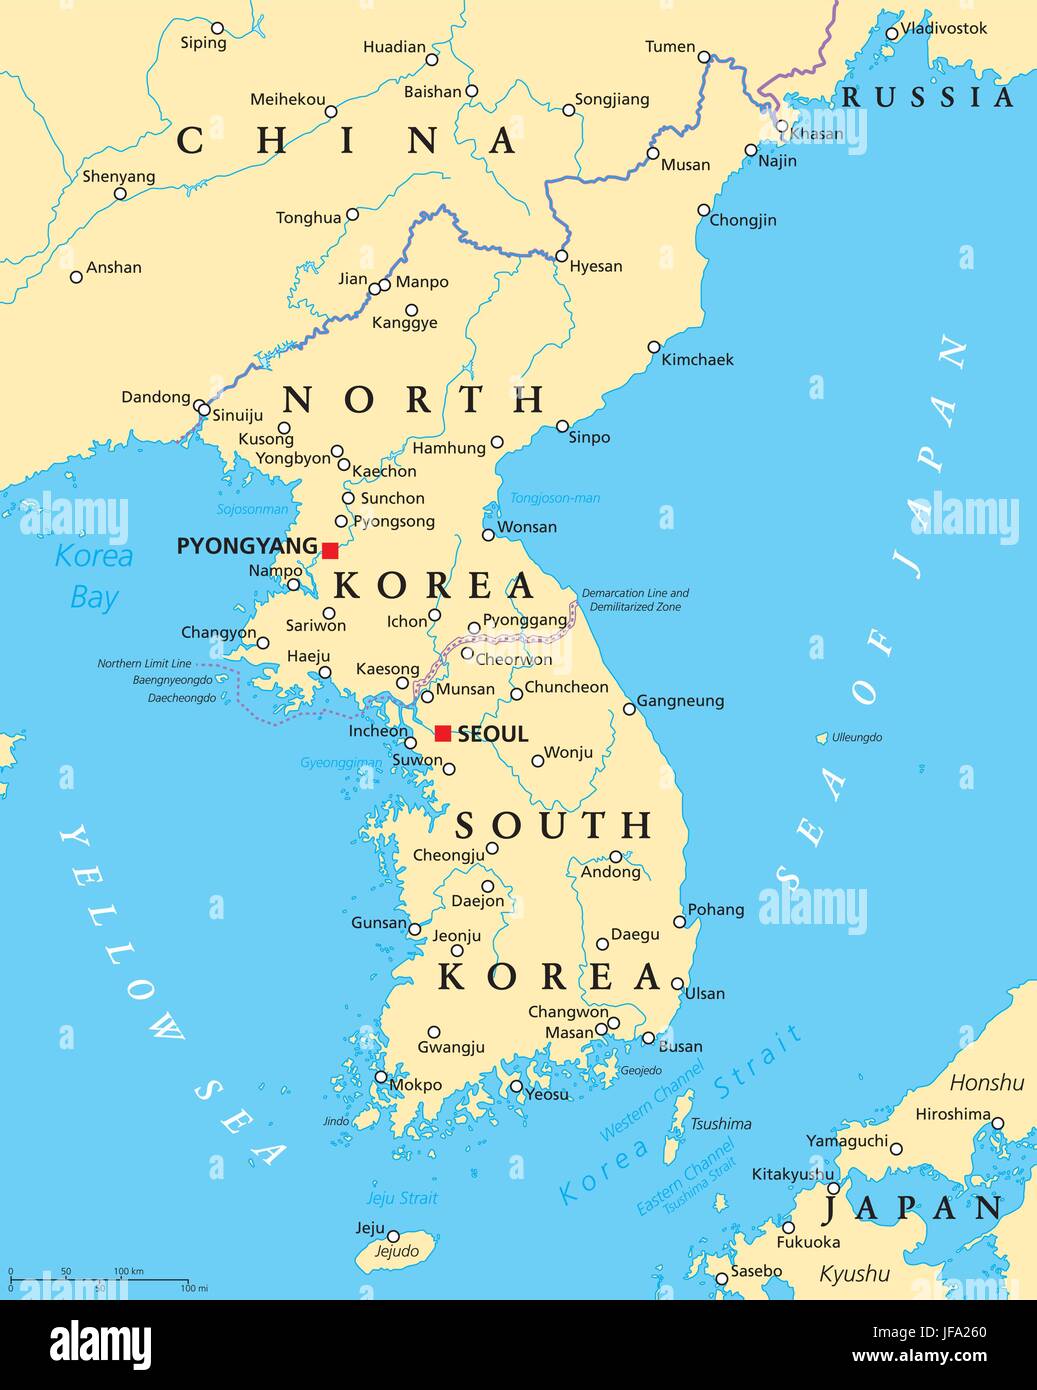 Korean Peninsula Political Map Stock Vector